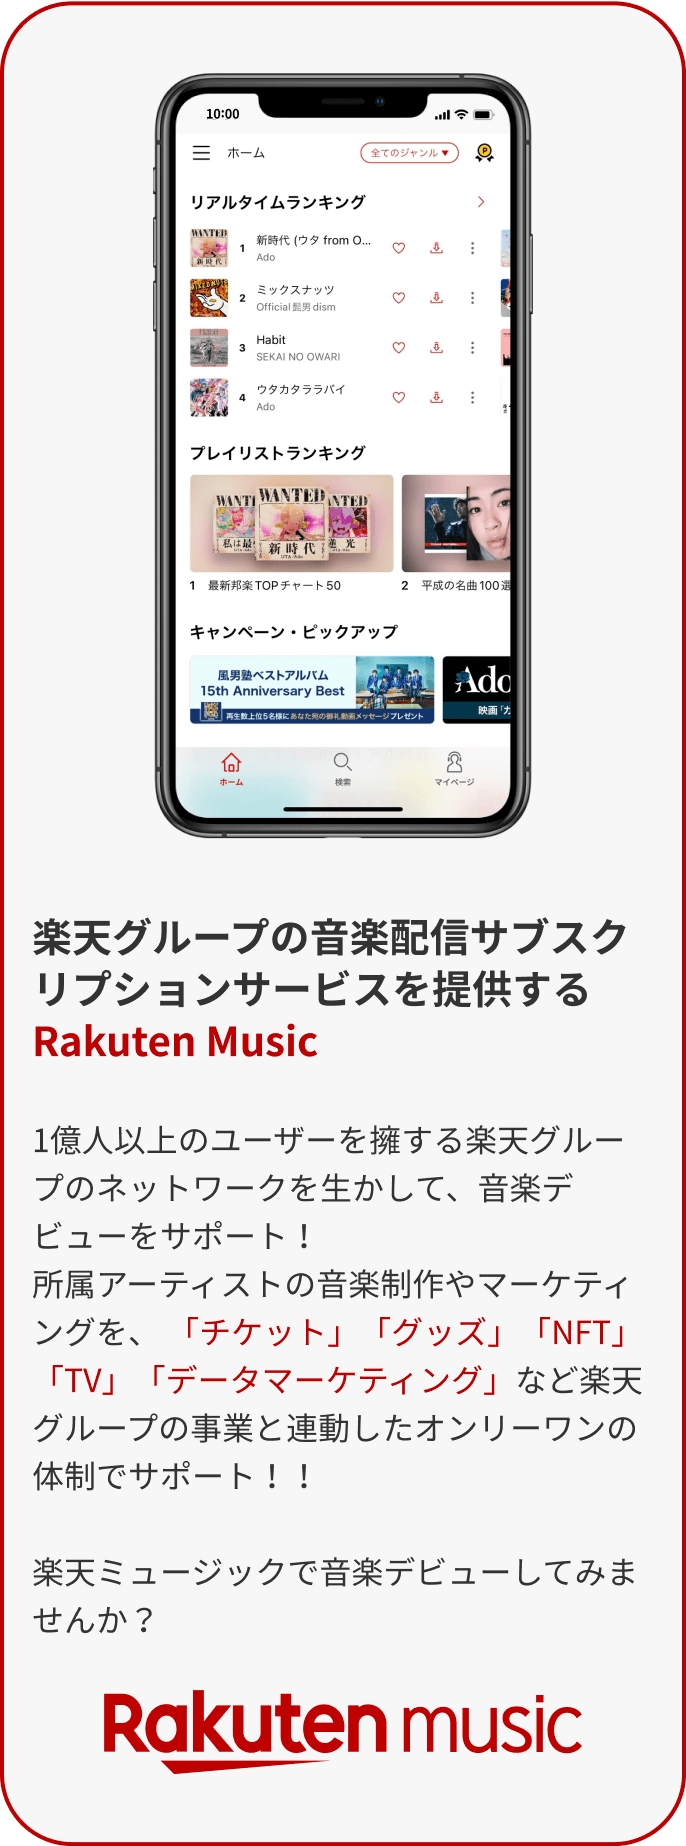 楽天グループの音楽配信サブスクリプションサービスを提供するRakuten Music